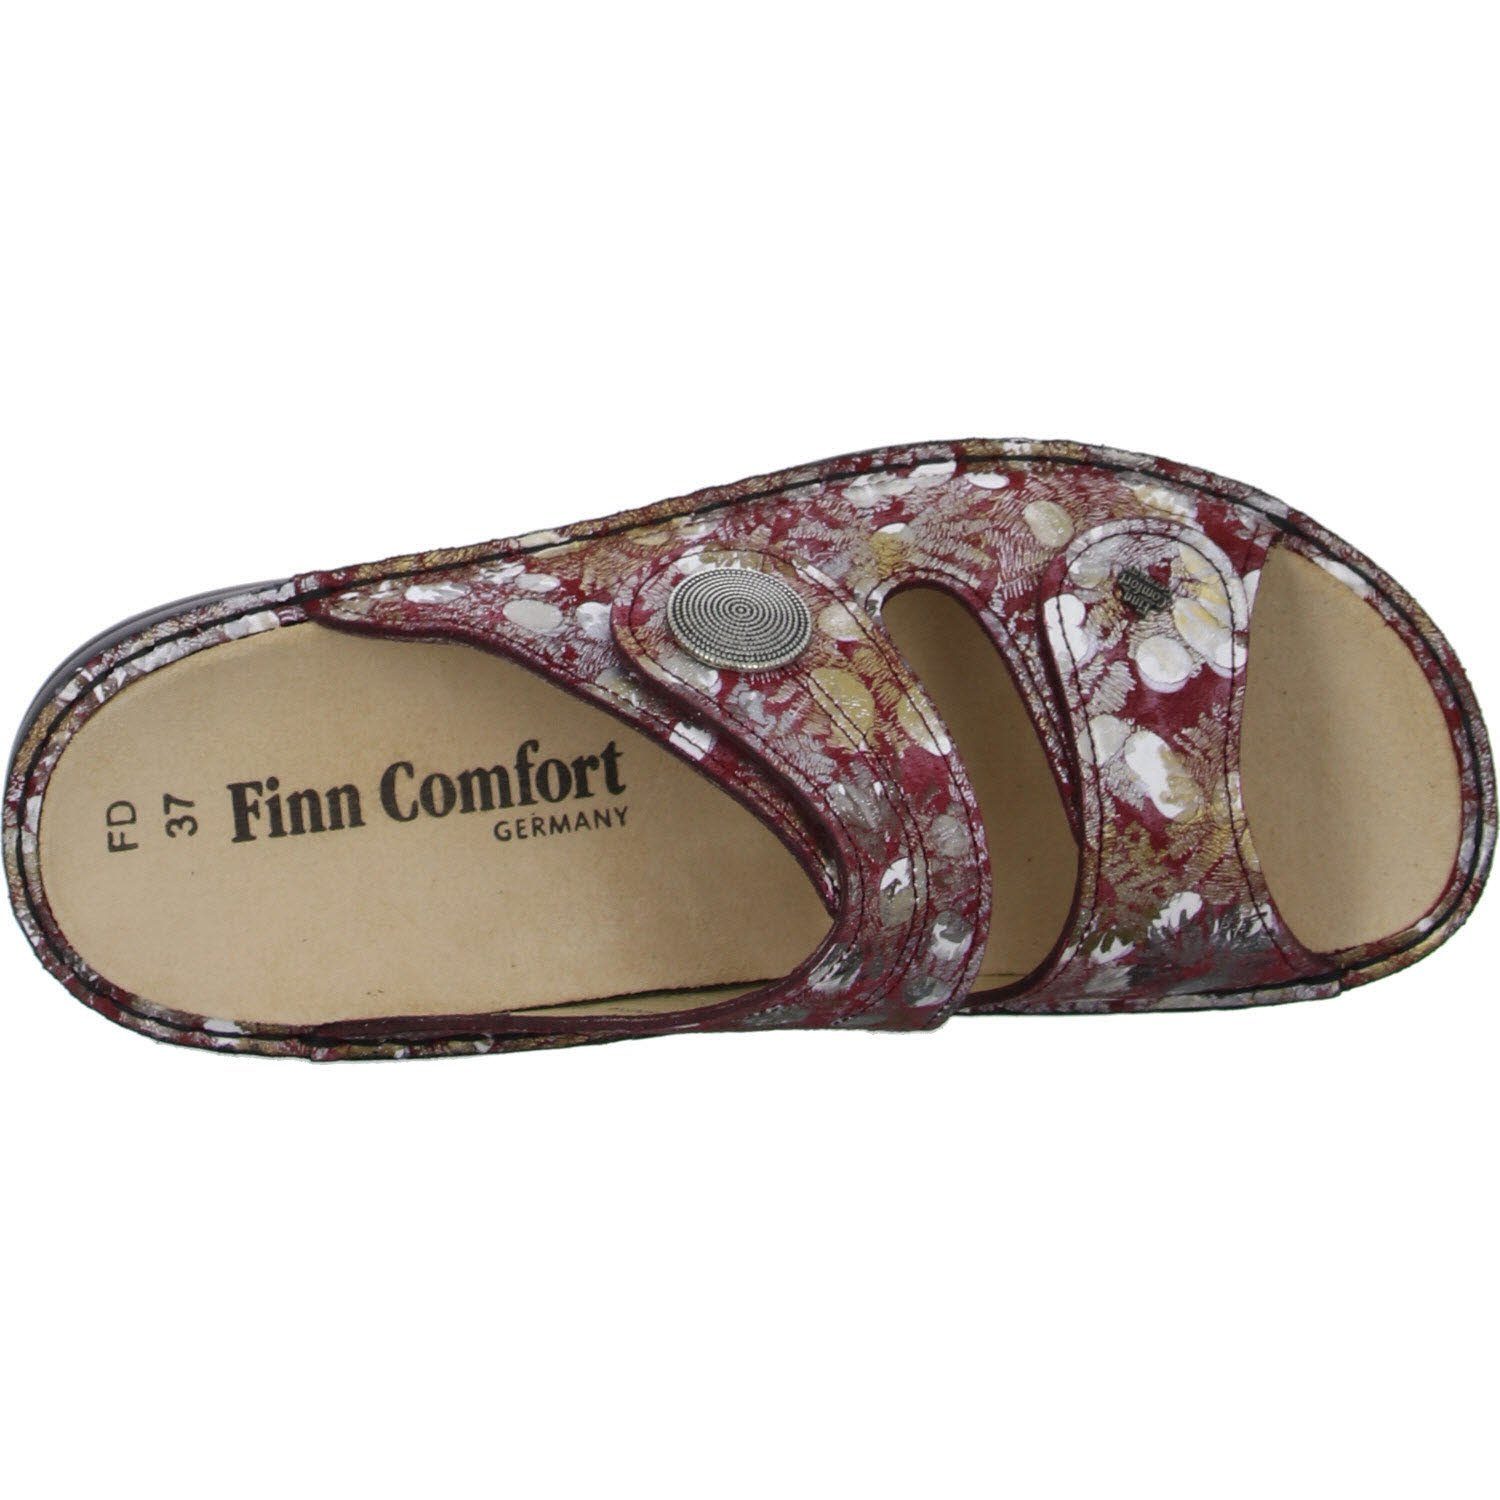 Pantolette Finn 02550-109378 Comfort berry/iris